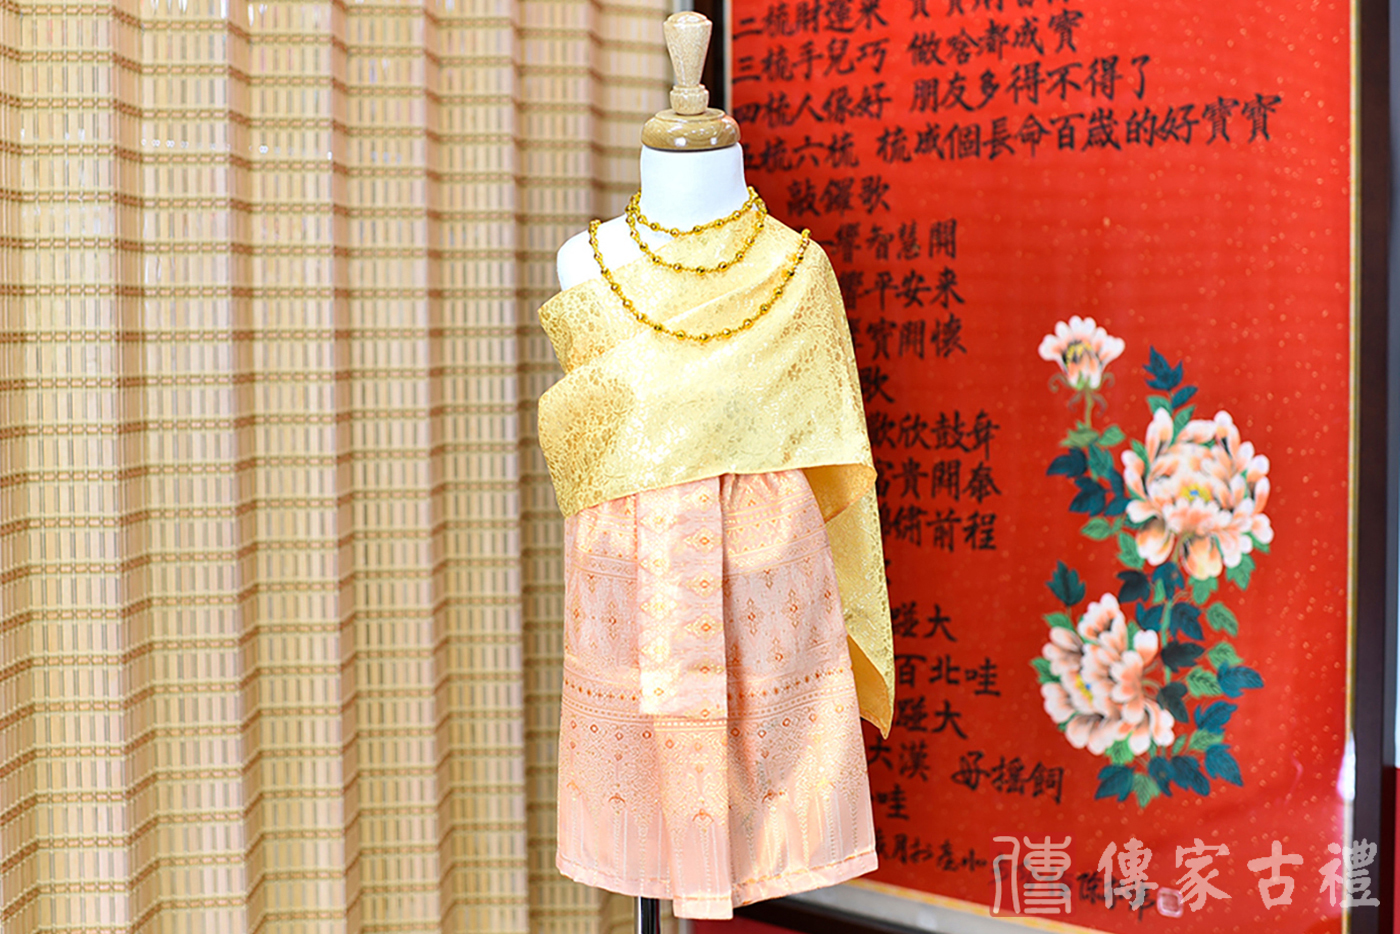 2024-02-22小孩皇室泰服古裝禮服。金色的絲綢披肩搭配粉橙色織物裙裝的泰式古裝禮服。照片集